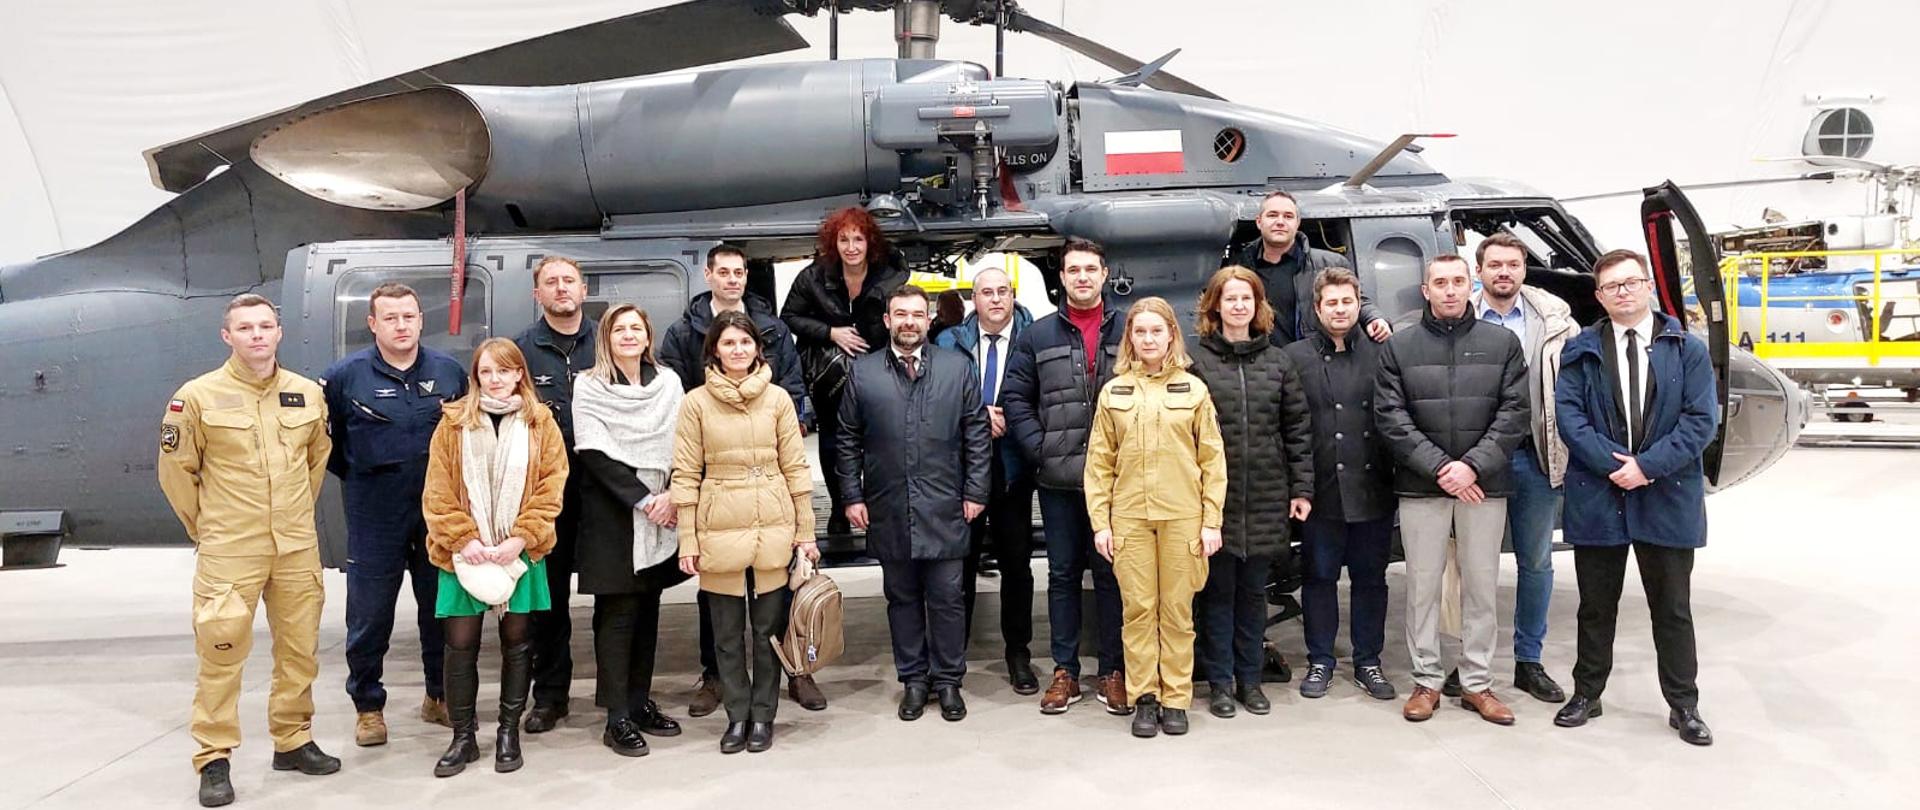 Delegacja ekspertów z Rumunii wraz osobami koordynującymi wizytę pozuje do zdjęcia pamiątkowego na tle śmigłowca